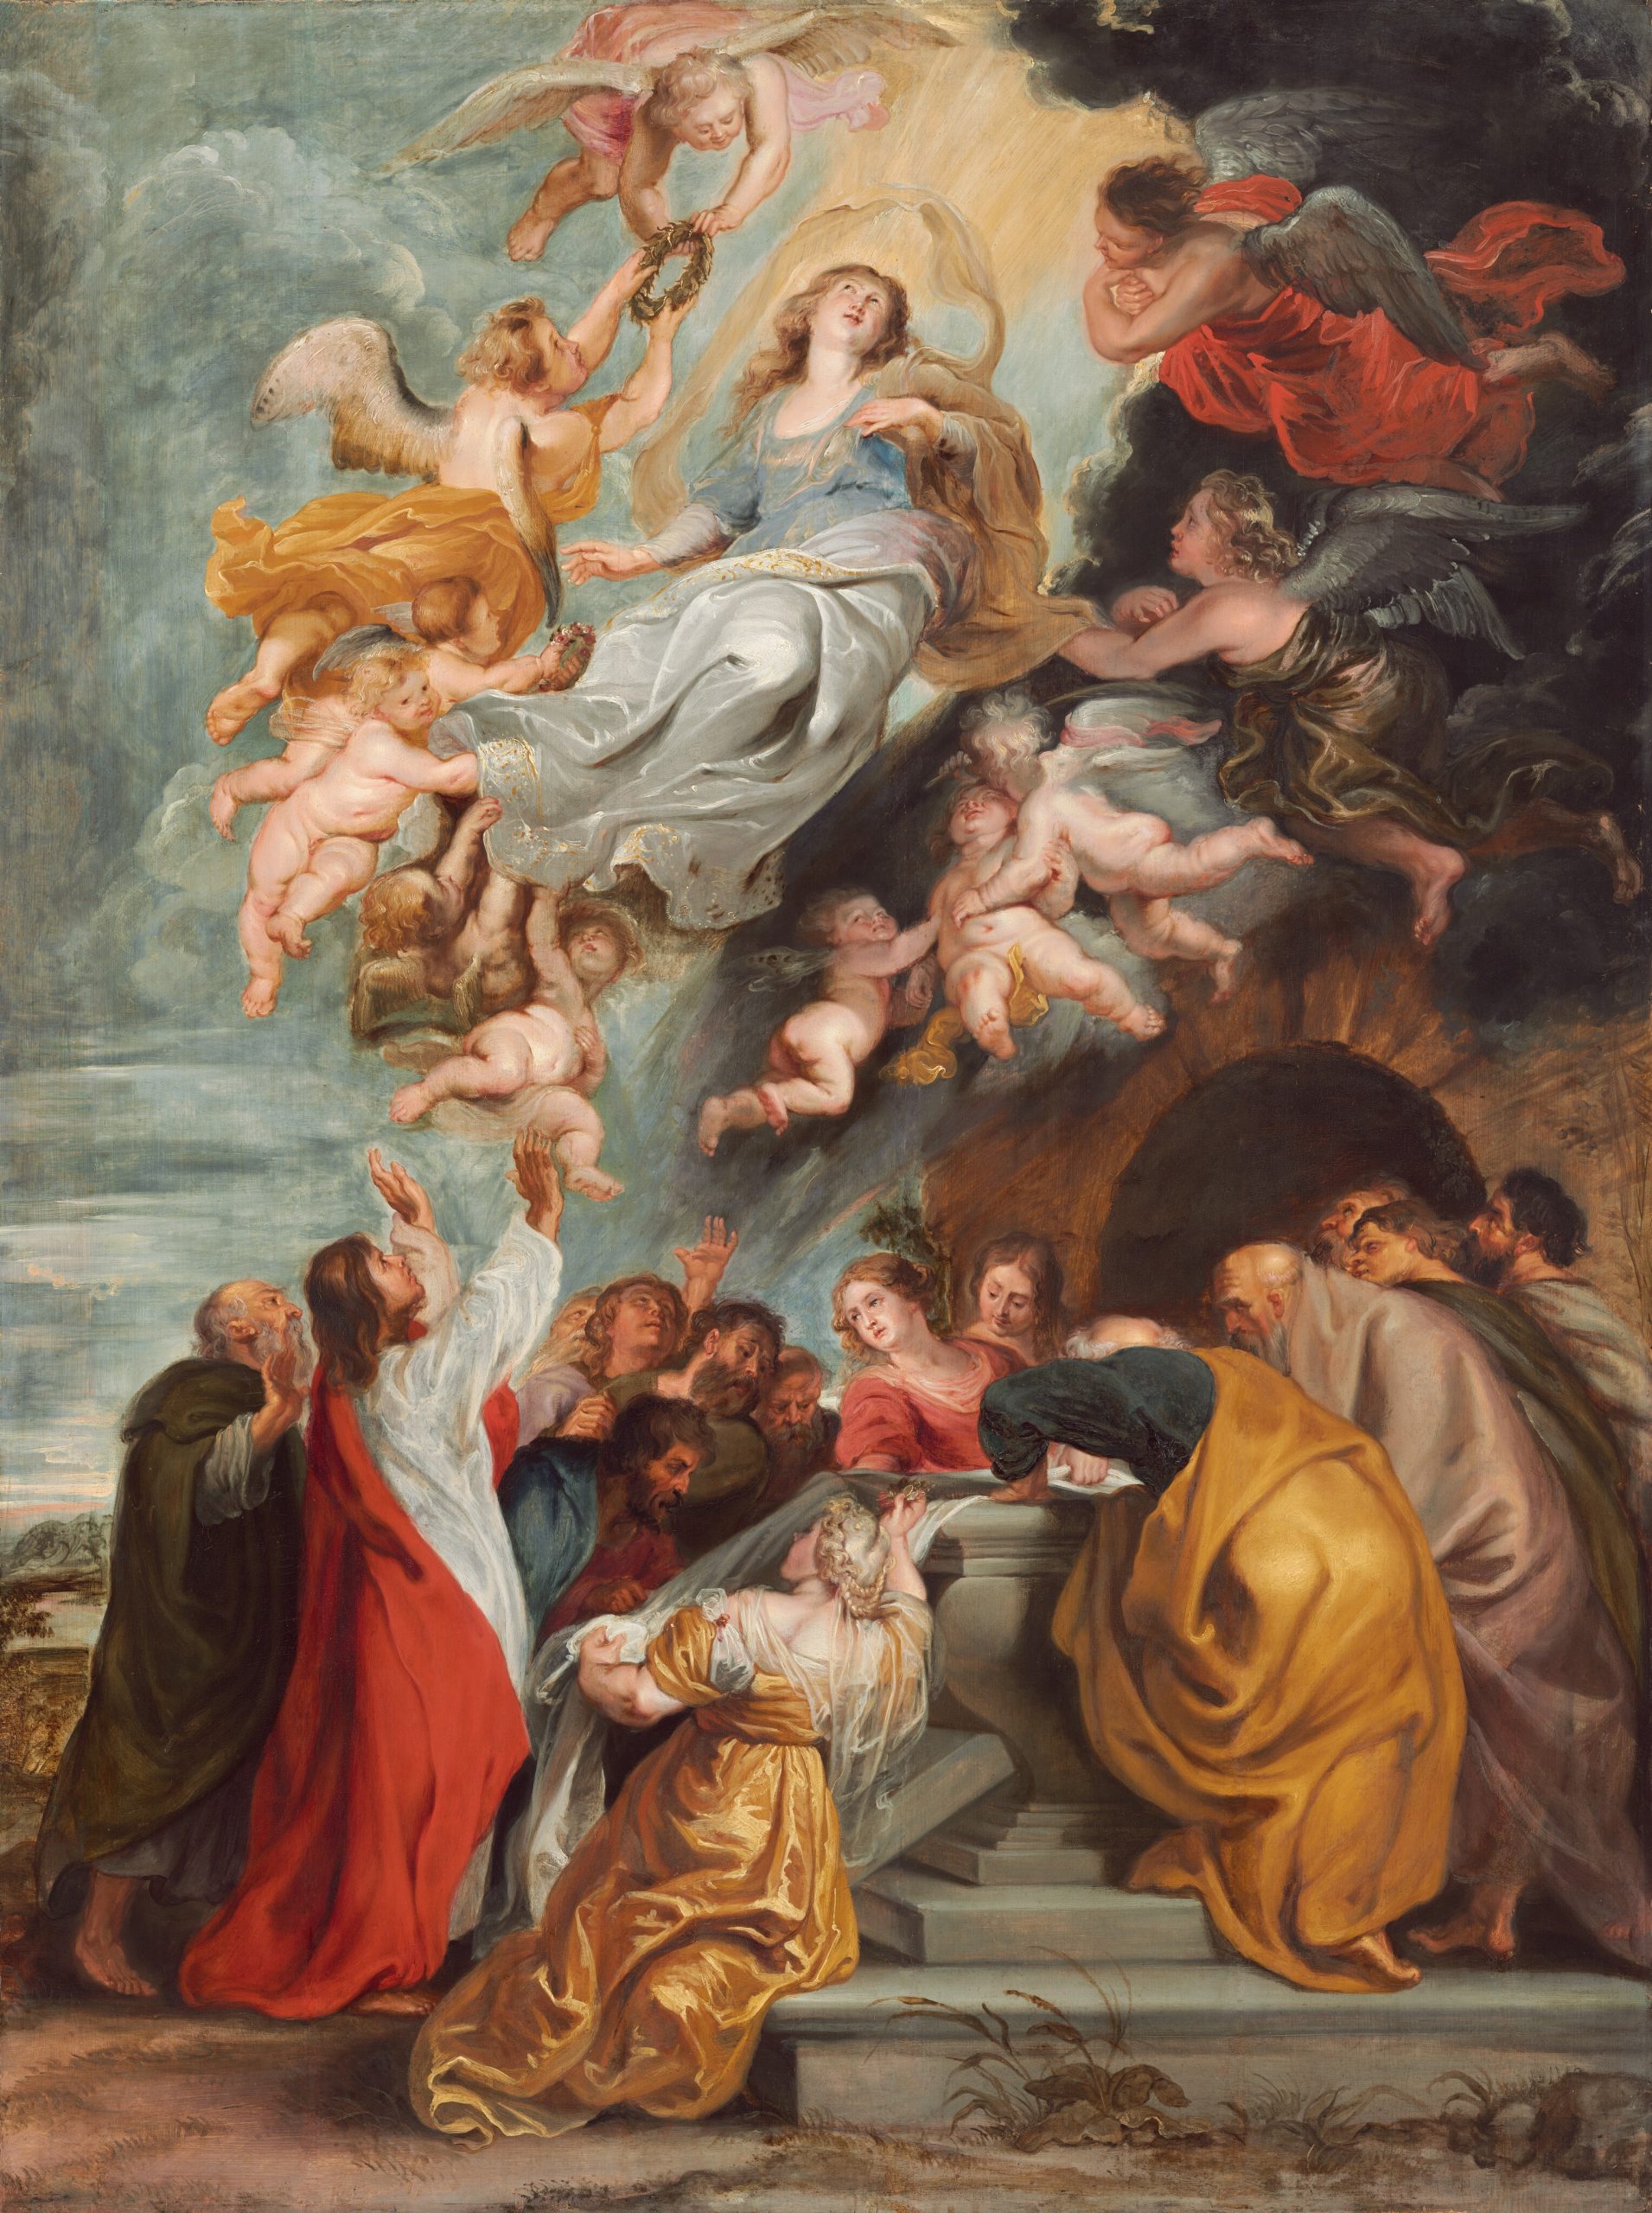 Titian, Assumption Of The Virgin